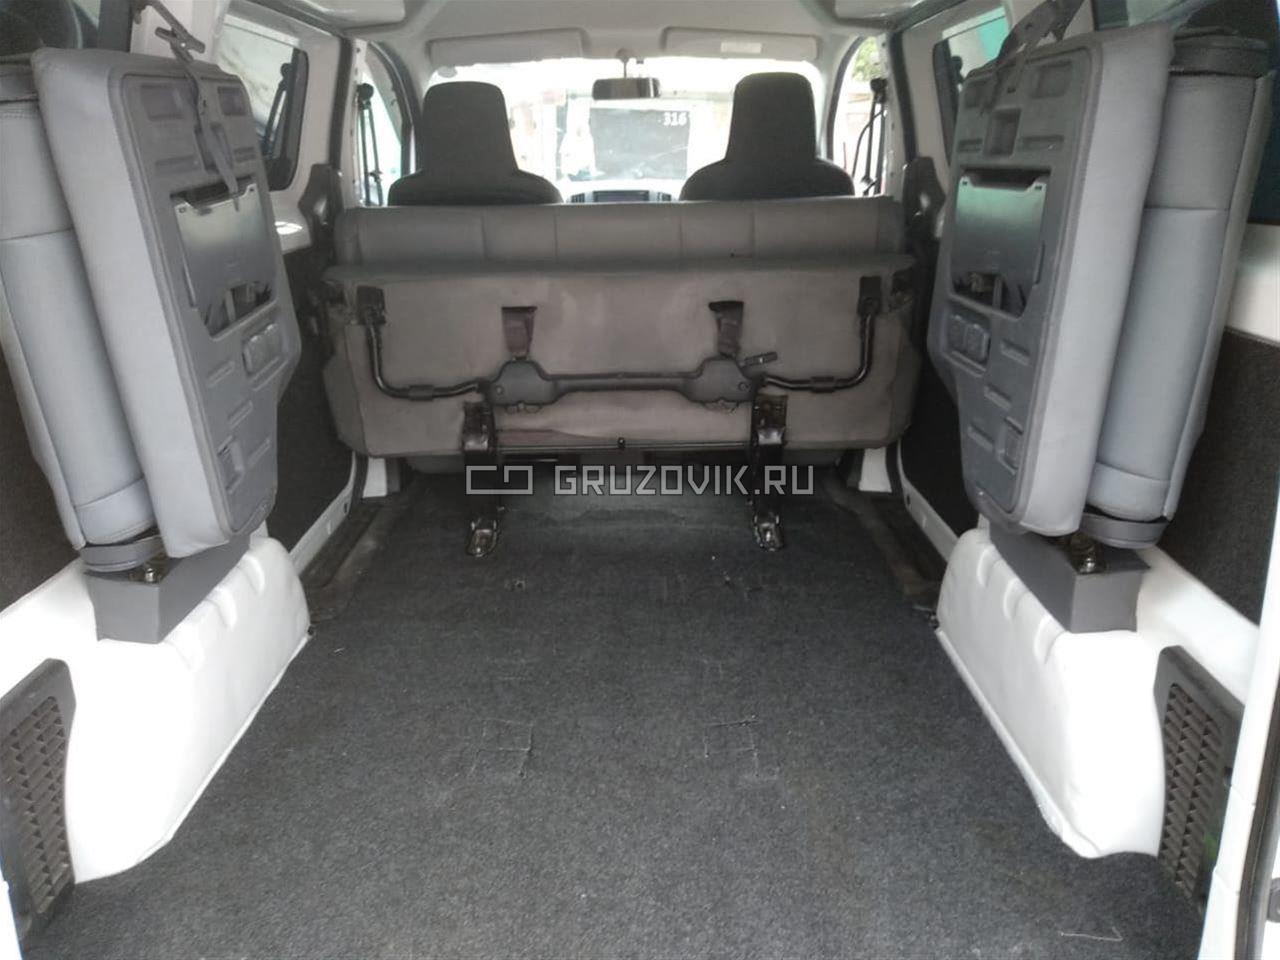 Новый Микроавтобус Nissan NV200 в продаже  на Gruzovik.ru, 879 900 ₽